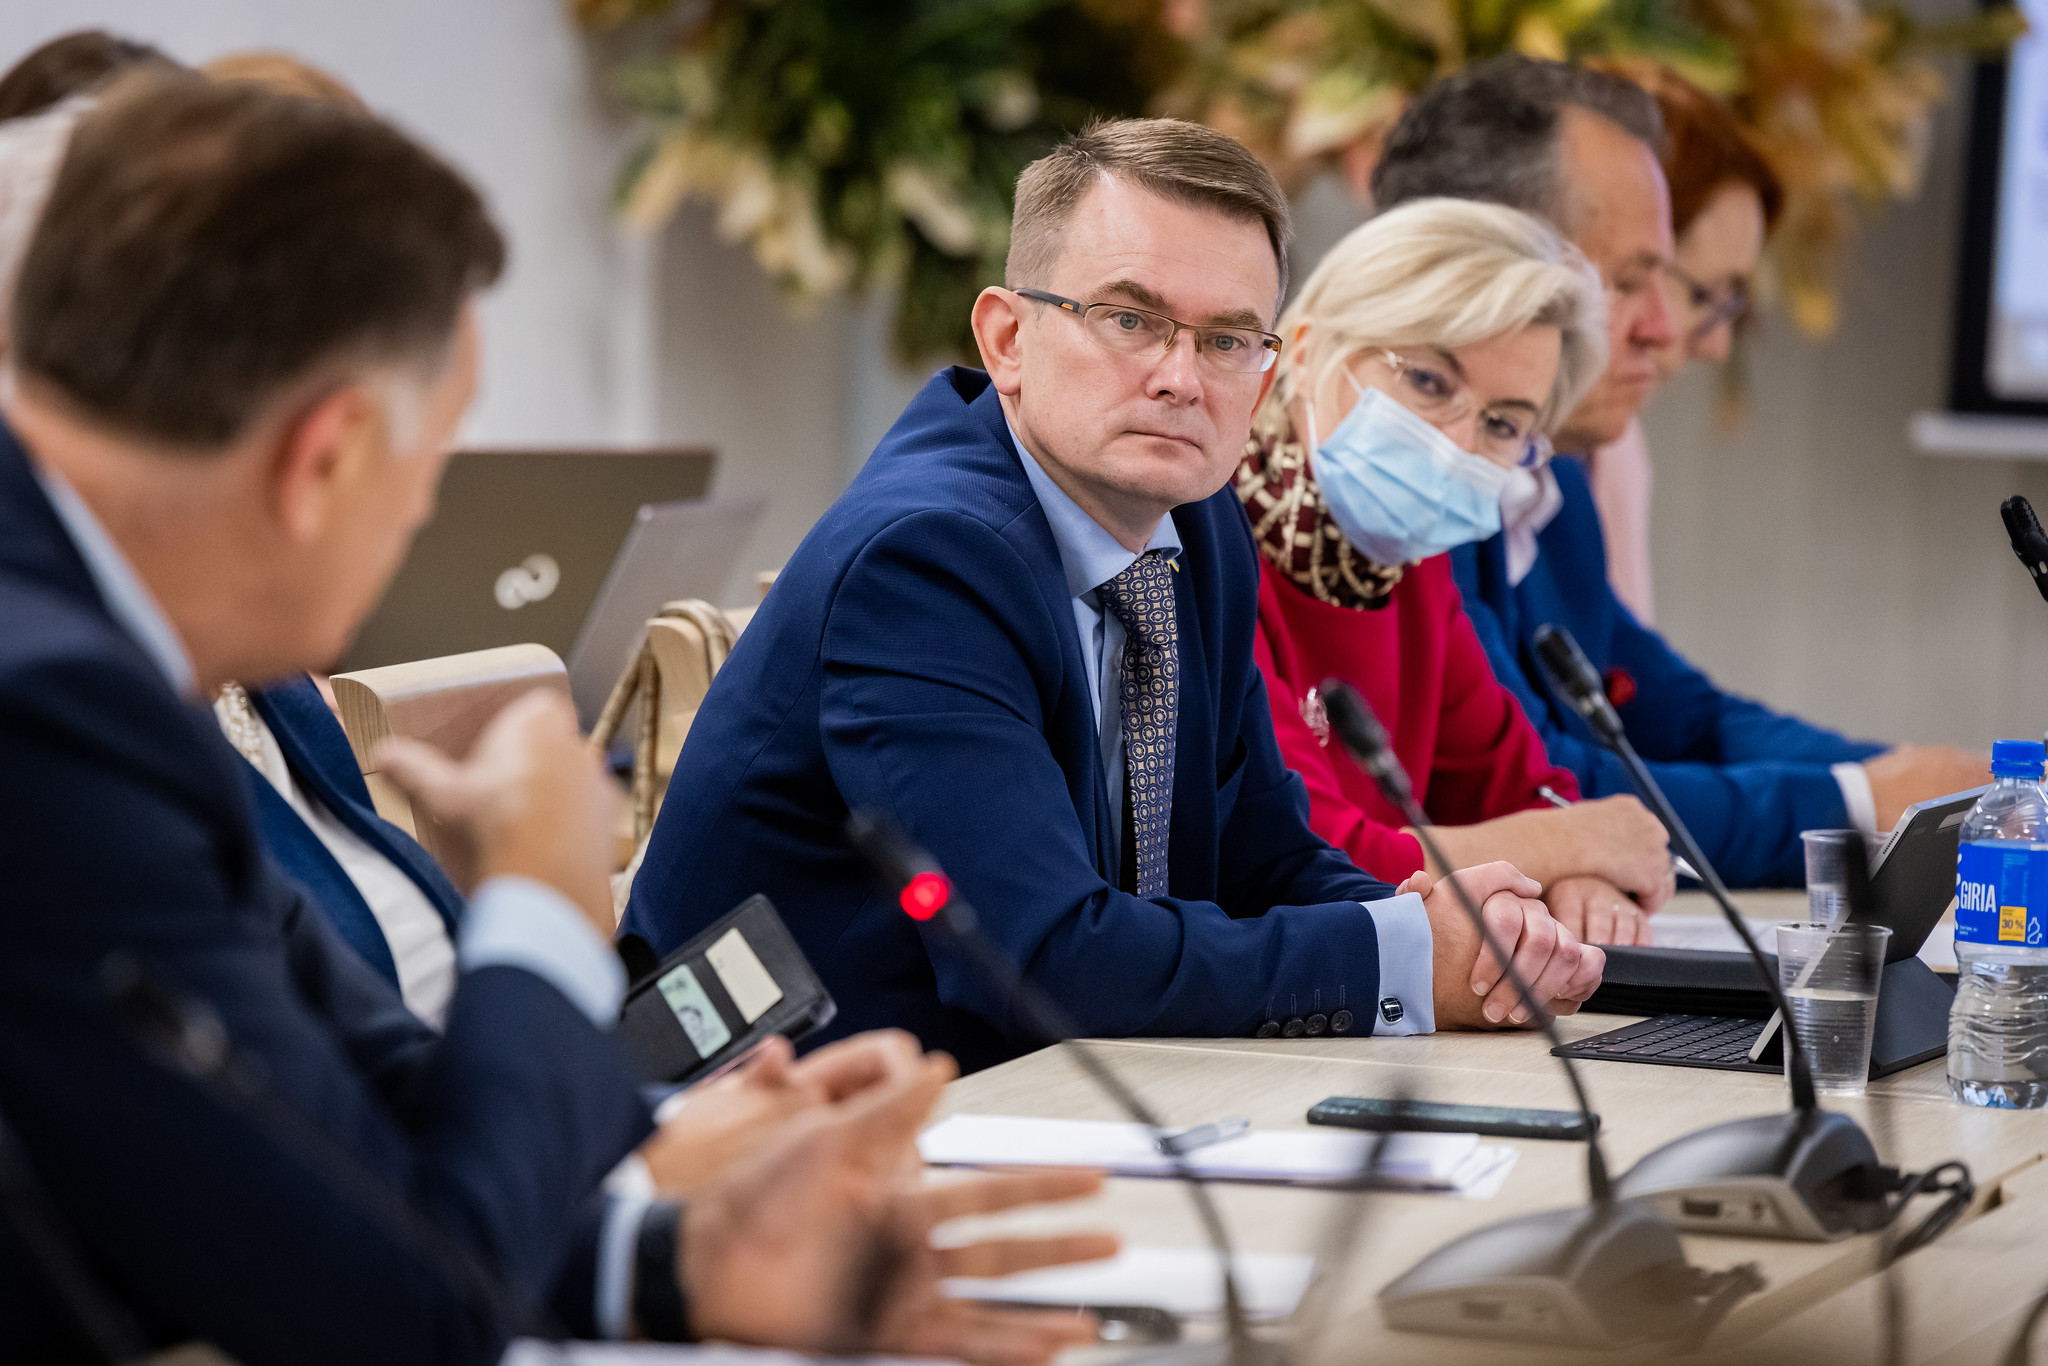 Kardiologė apie širdies ligų gydymą Lietuvoje: „prarandame žmonių gyvybes kaip kare“